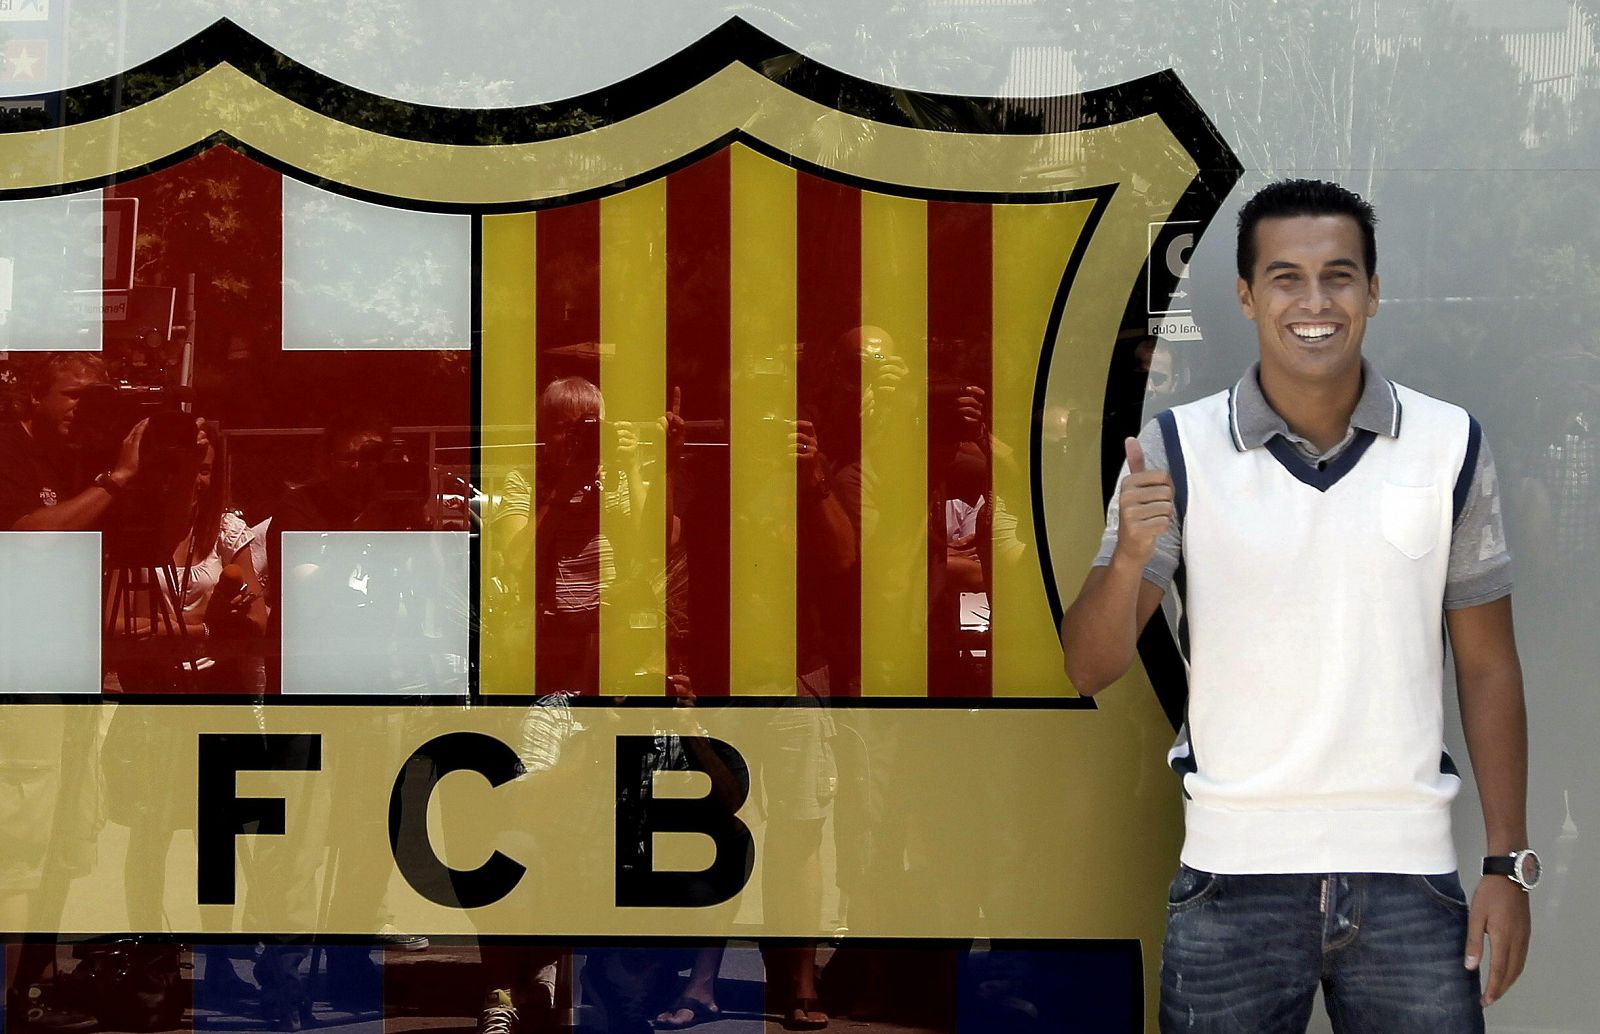 El delantero del FC Barcelona Pedro Rodríguez posa con el escudo del club, tras la firma de su nuevo contrato con el equipo azulgrana en el que militará hasta el año 2016